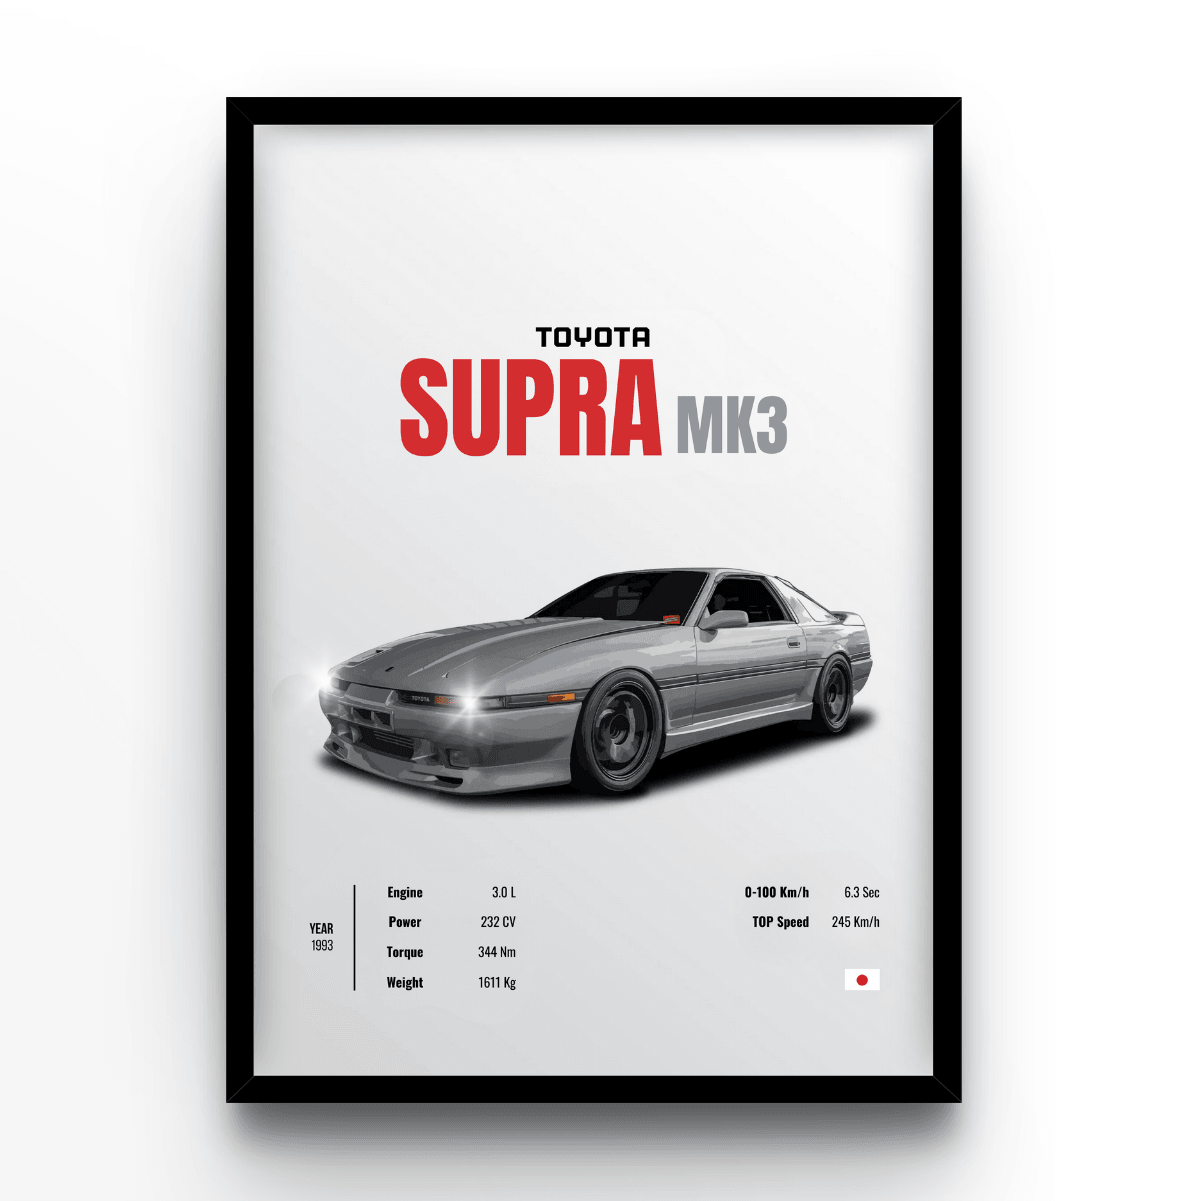 Supra MK3 - A4, A3, A2 Posters Base - Poster Print Shop / Art Prints / PostersBase